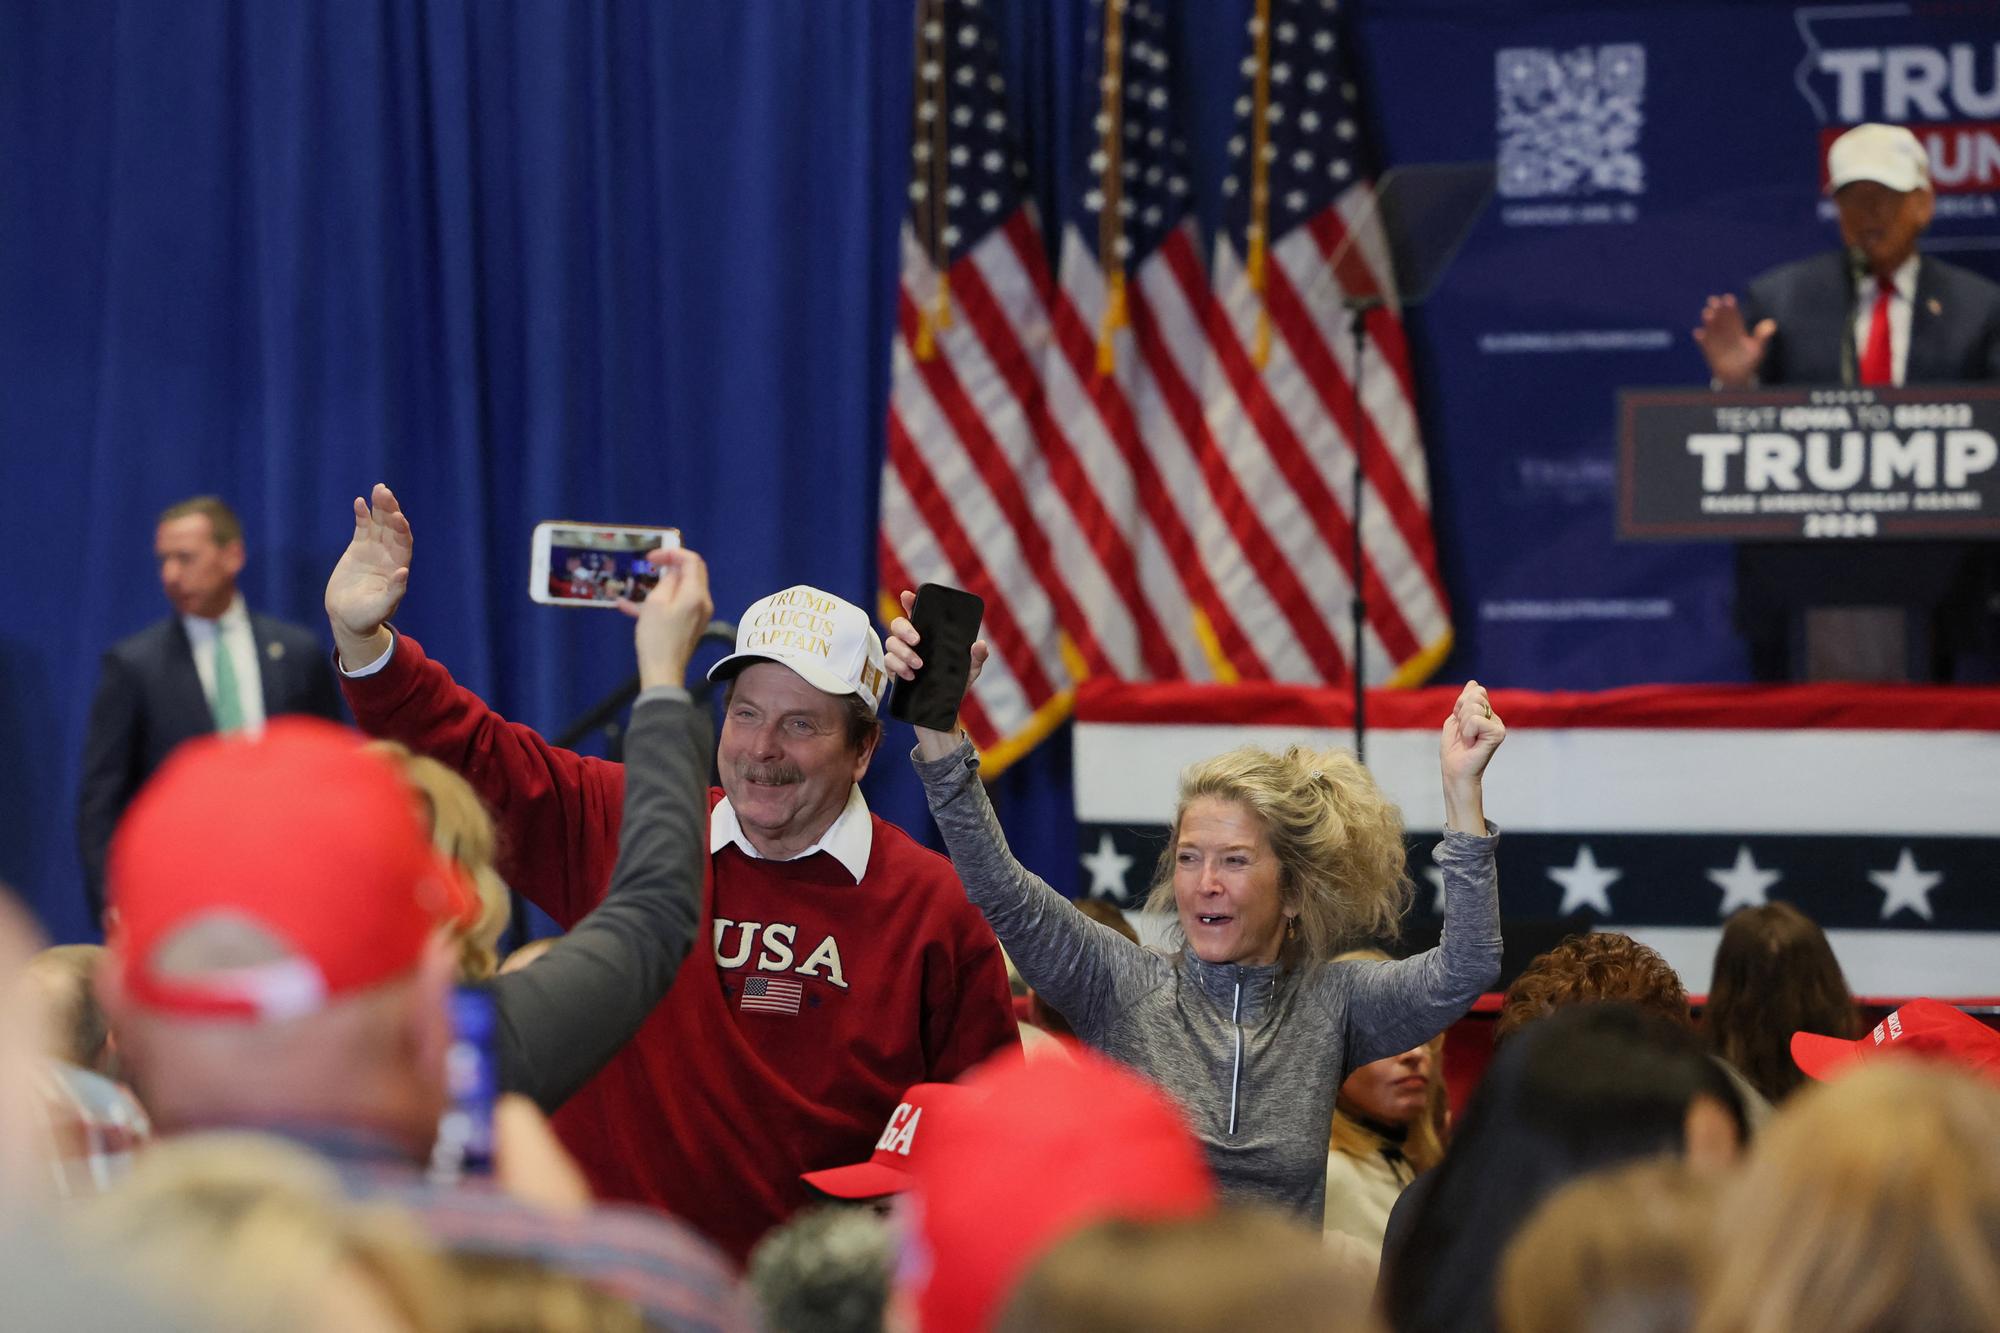 Des supporters de Donald Trump ravis de la tournure de cette primaire républicaine en Iowa. [Brendan McDermid]